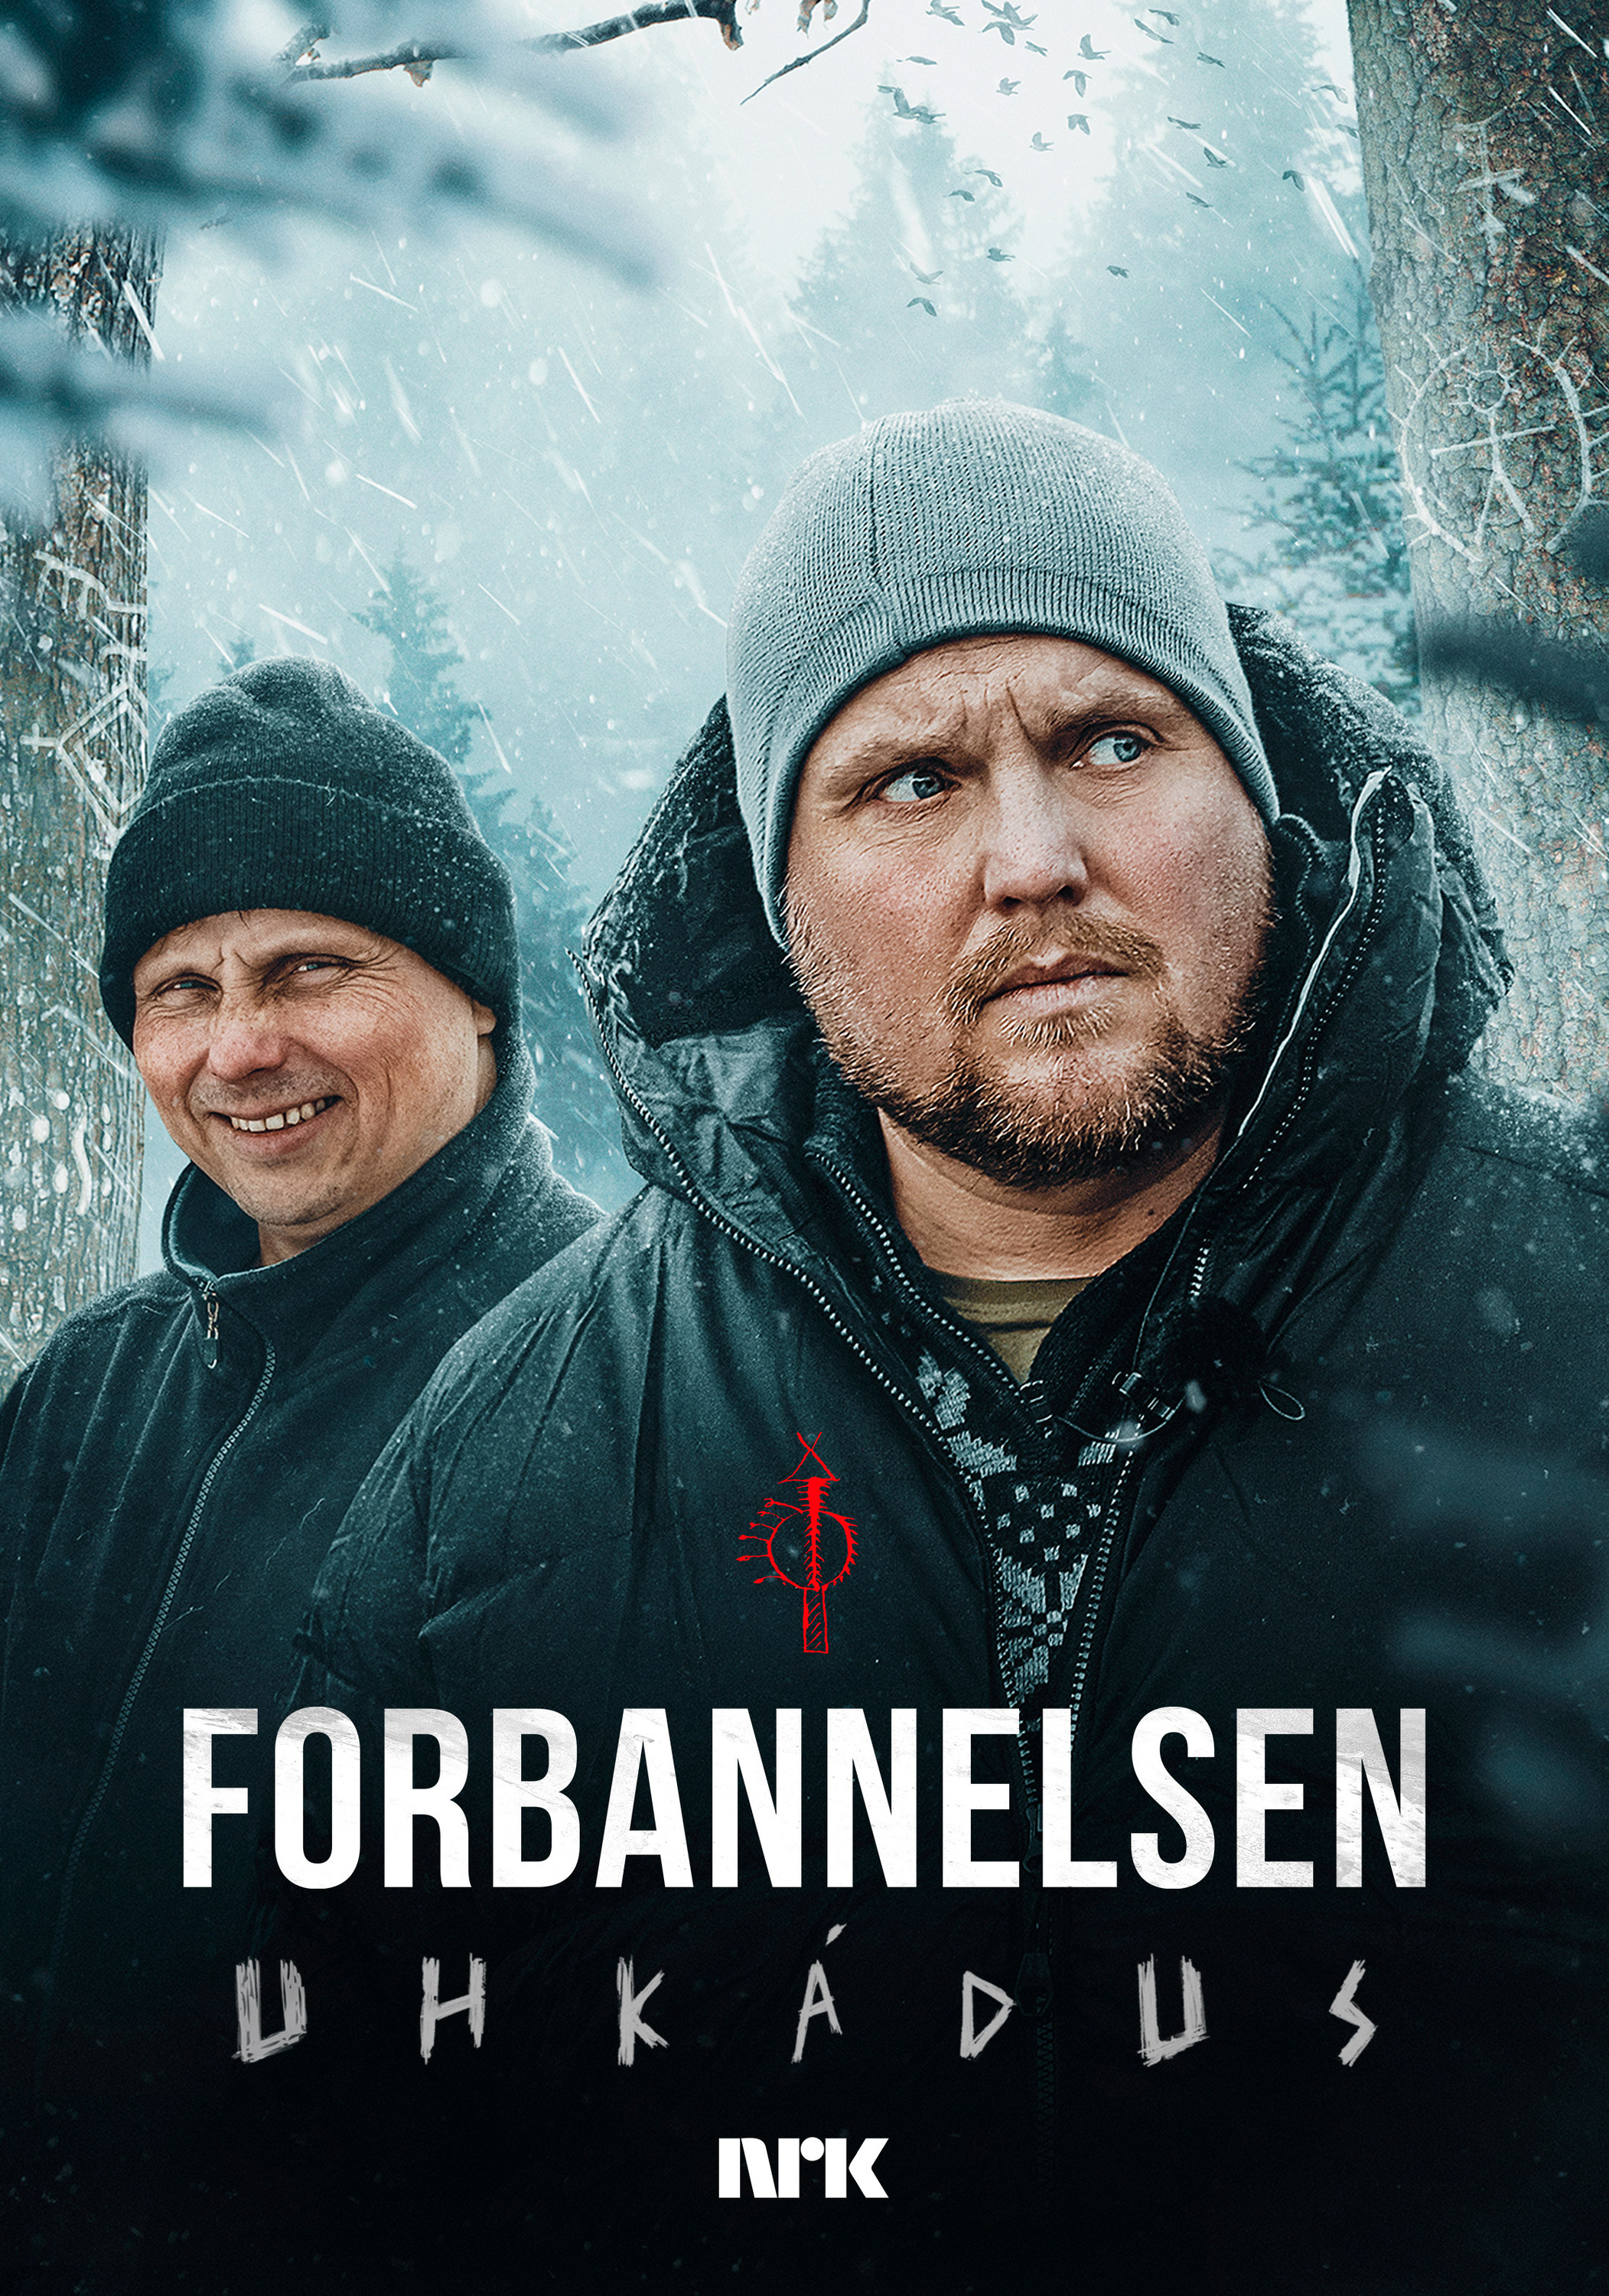 Mega Sized TV Poster Image for Forbannelsen - Uhkádus 